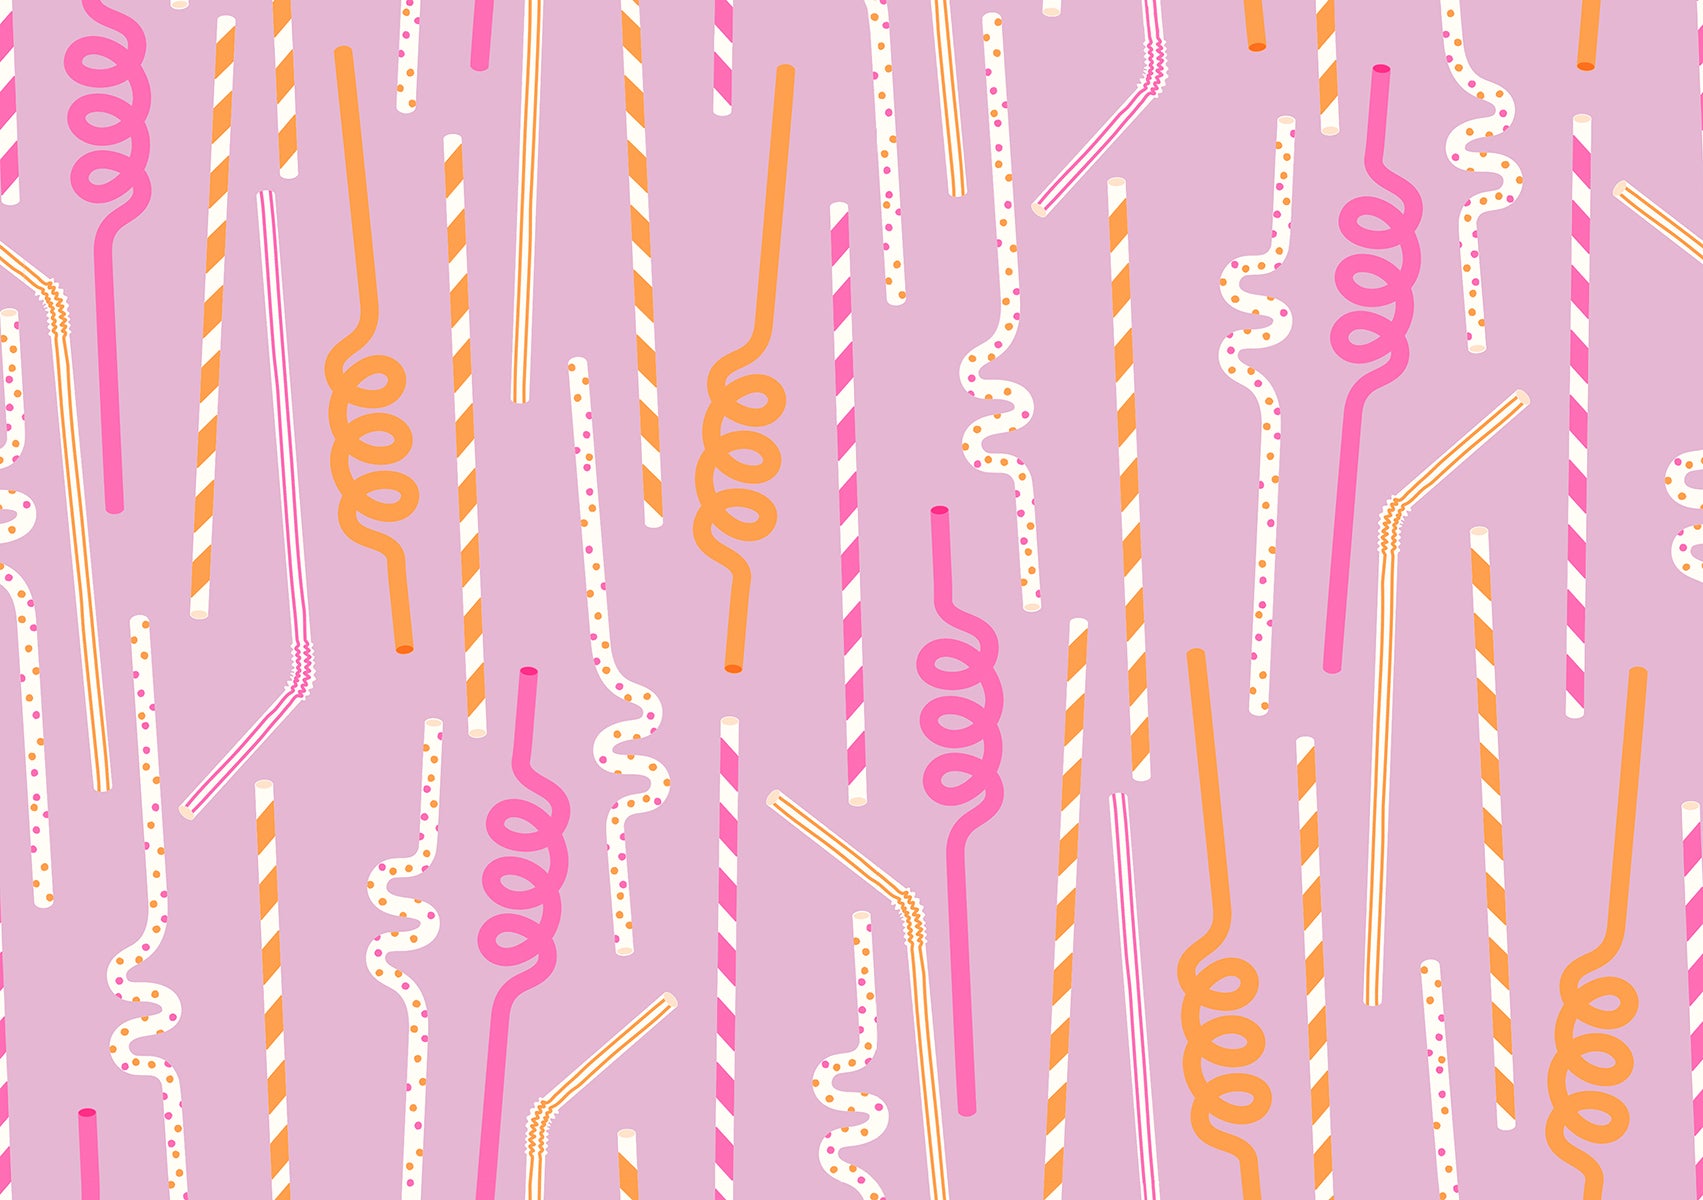 Straws in Macaron - Sugar Cone